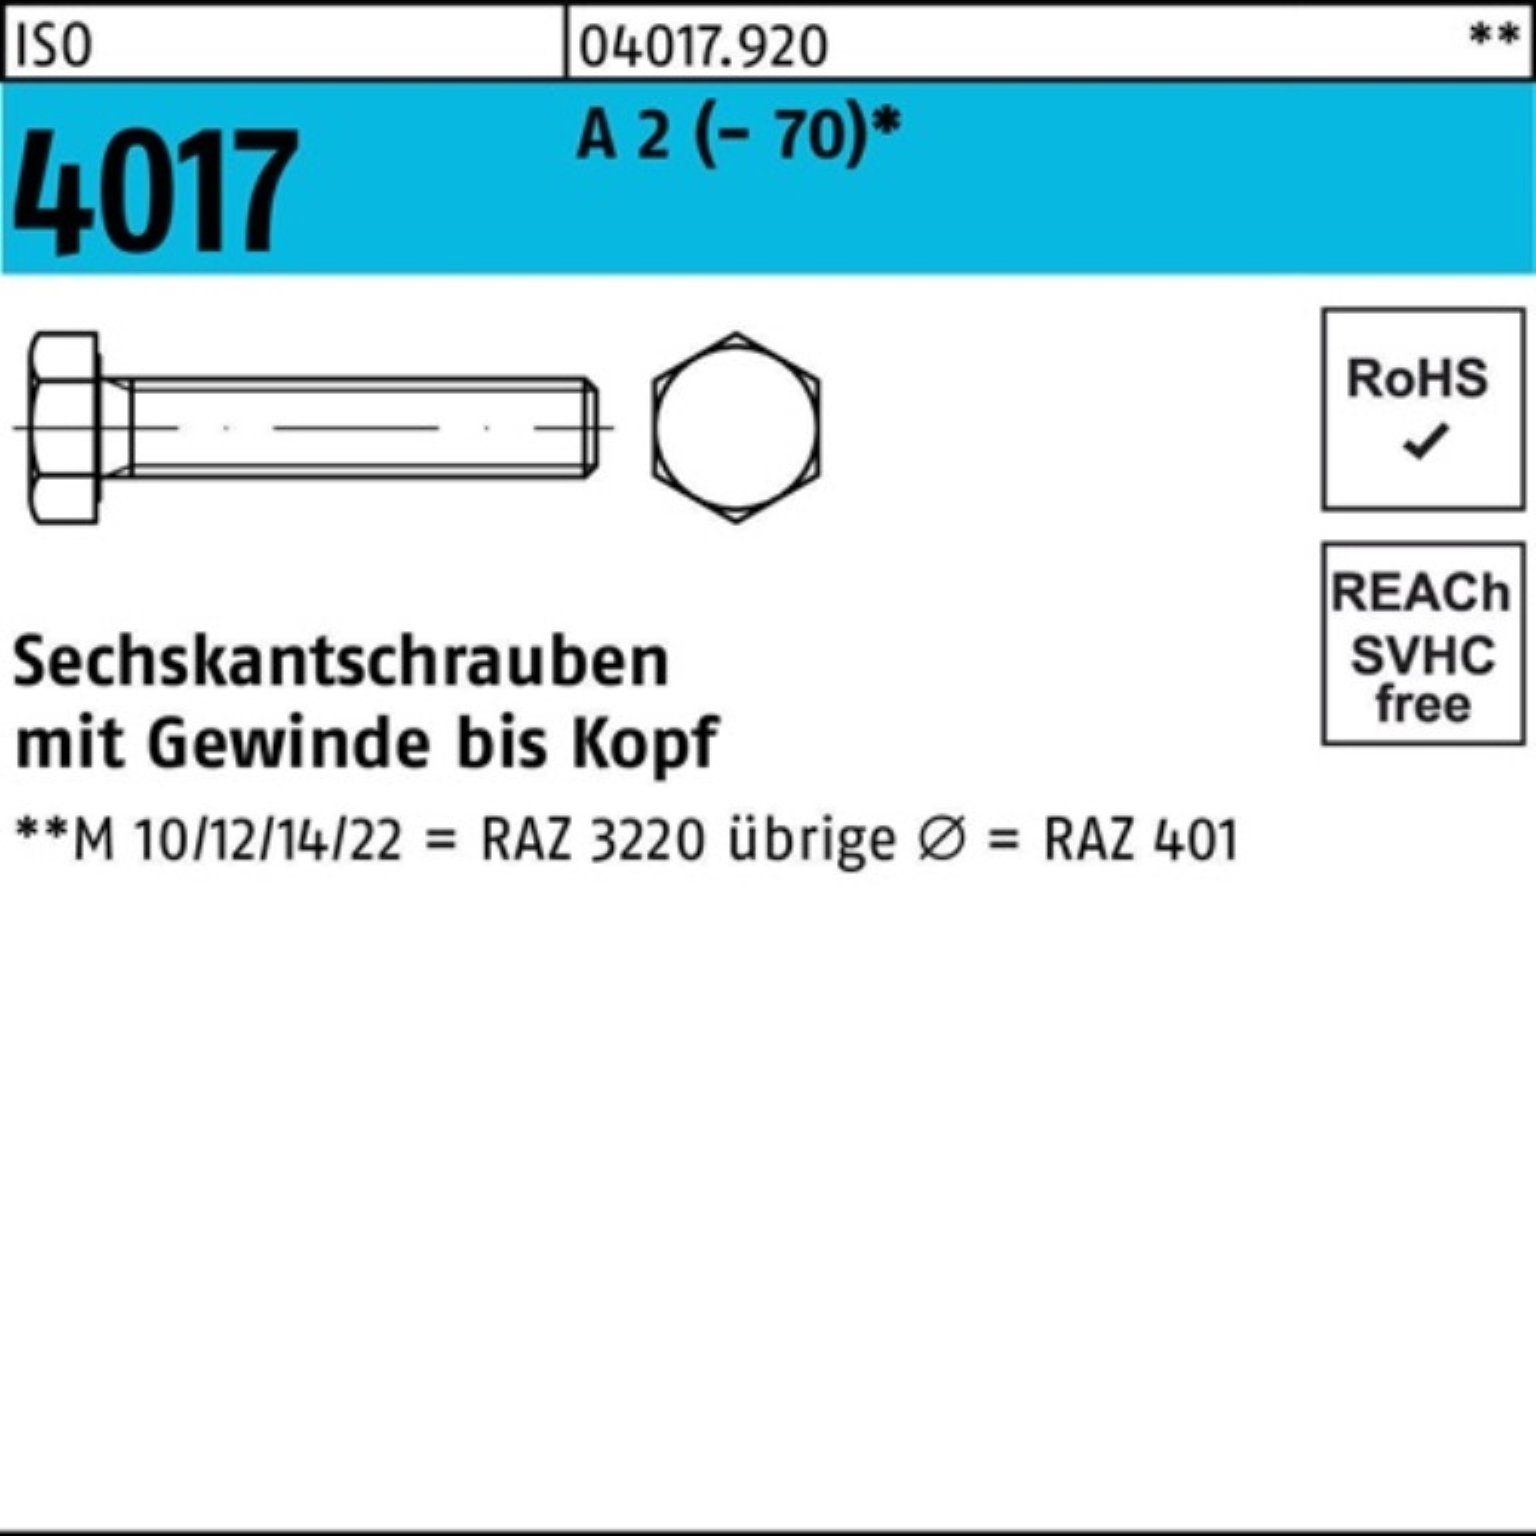 Bufab Sechskantschraube 100er Pack Sechskantschraube VG (70) 4017 Stück 2 M14x 50 80 ISO A